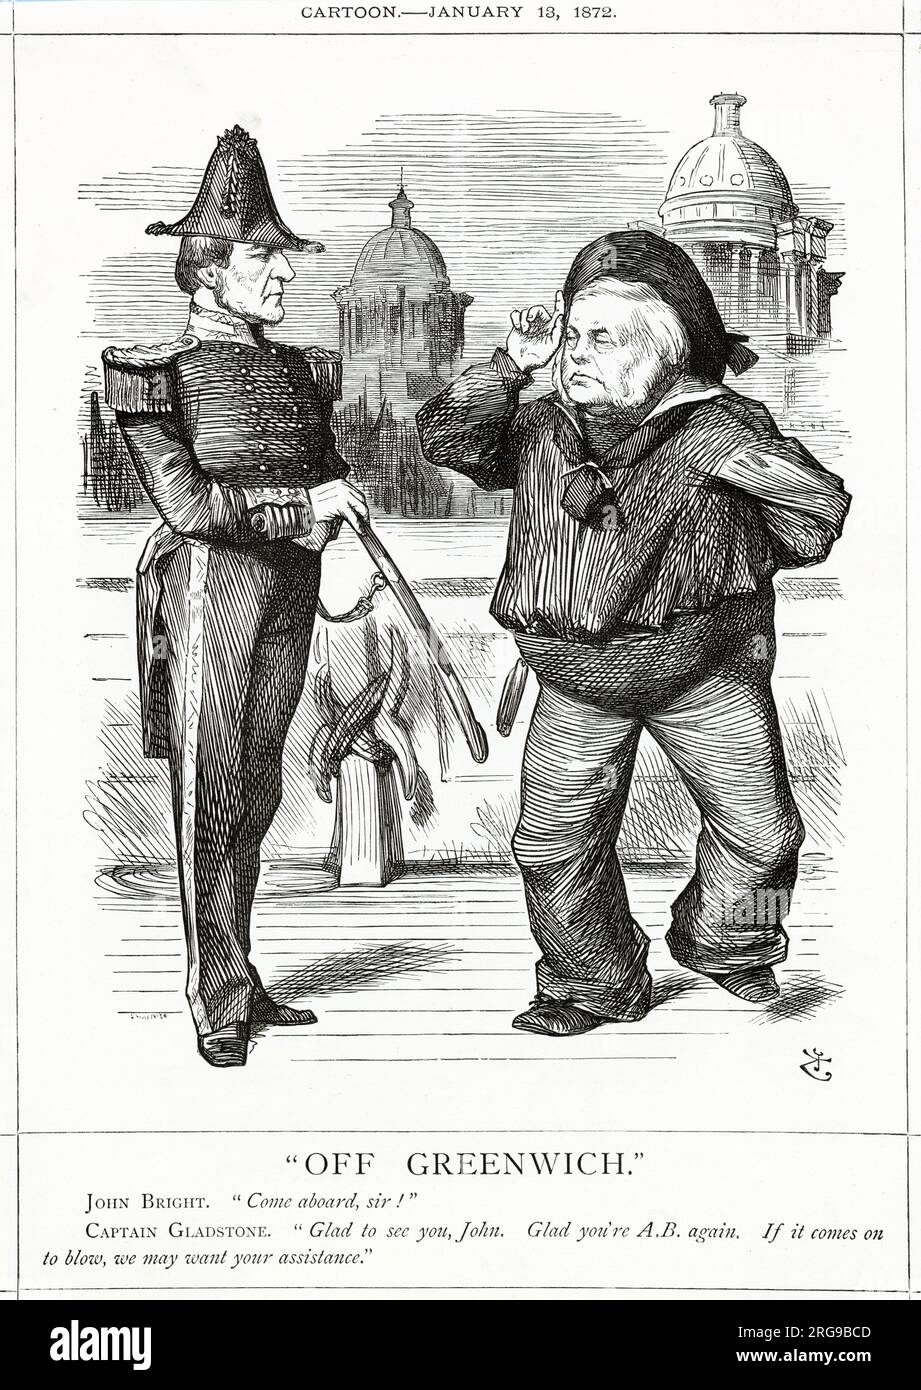 Cartoon, Off Greenwich -- in einer Marineanalogie, und mit dem Royal Naval College Gebäude im Hintergrund, begrüßt William Gladstone John Bright zurück in die Regierung nach einer Auszeit wegen Krankheit. Seine Hilfe könnte gut nötig sein. Stockfoto